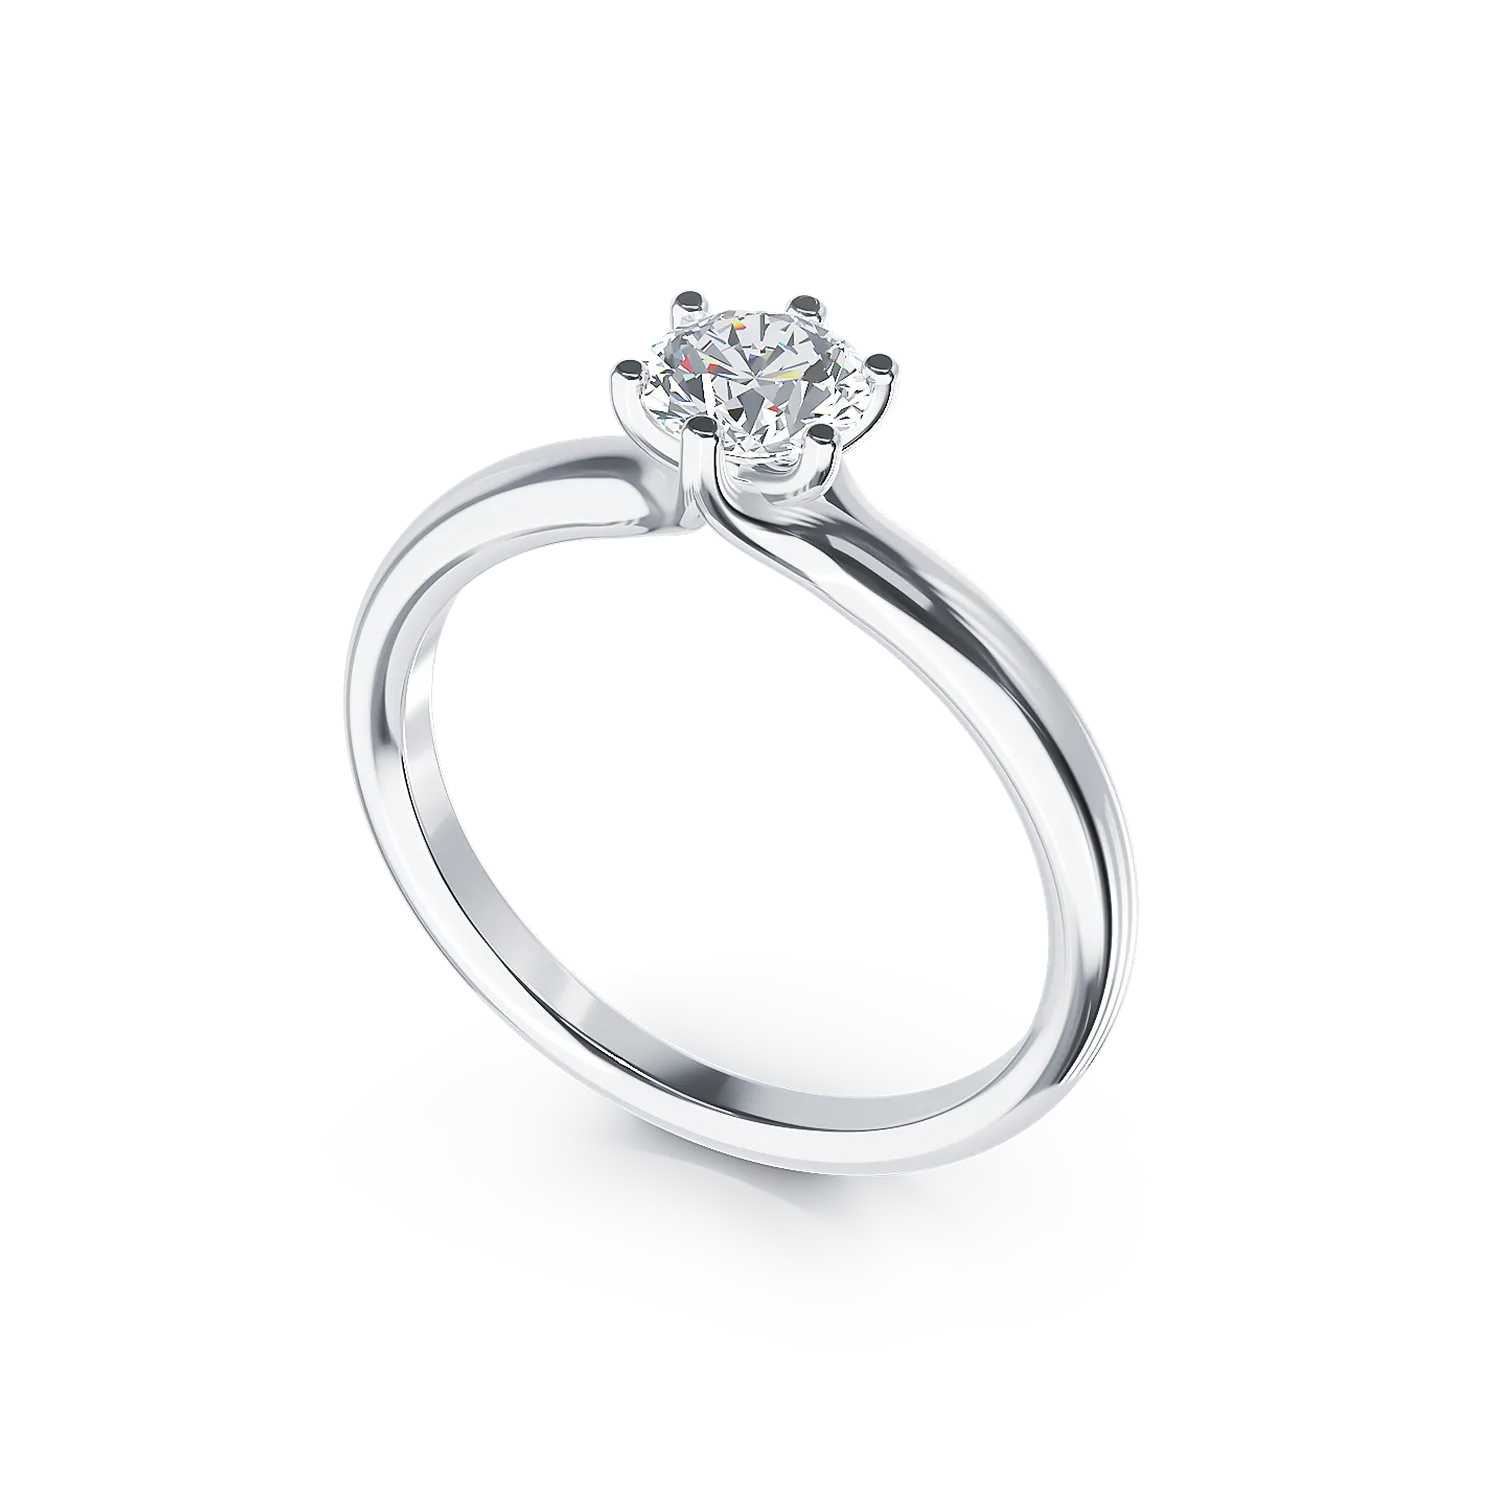 Eljegyzési gyűrű 18K-os fehér aranyból 0,5ct gyémánttal. Gramm: 2,60